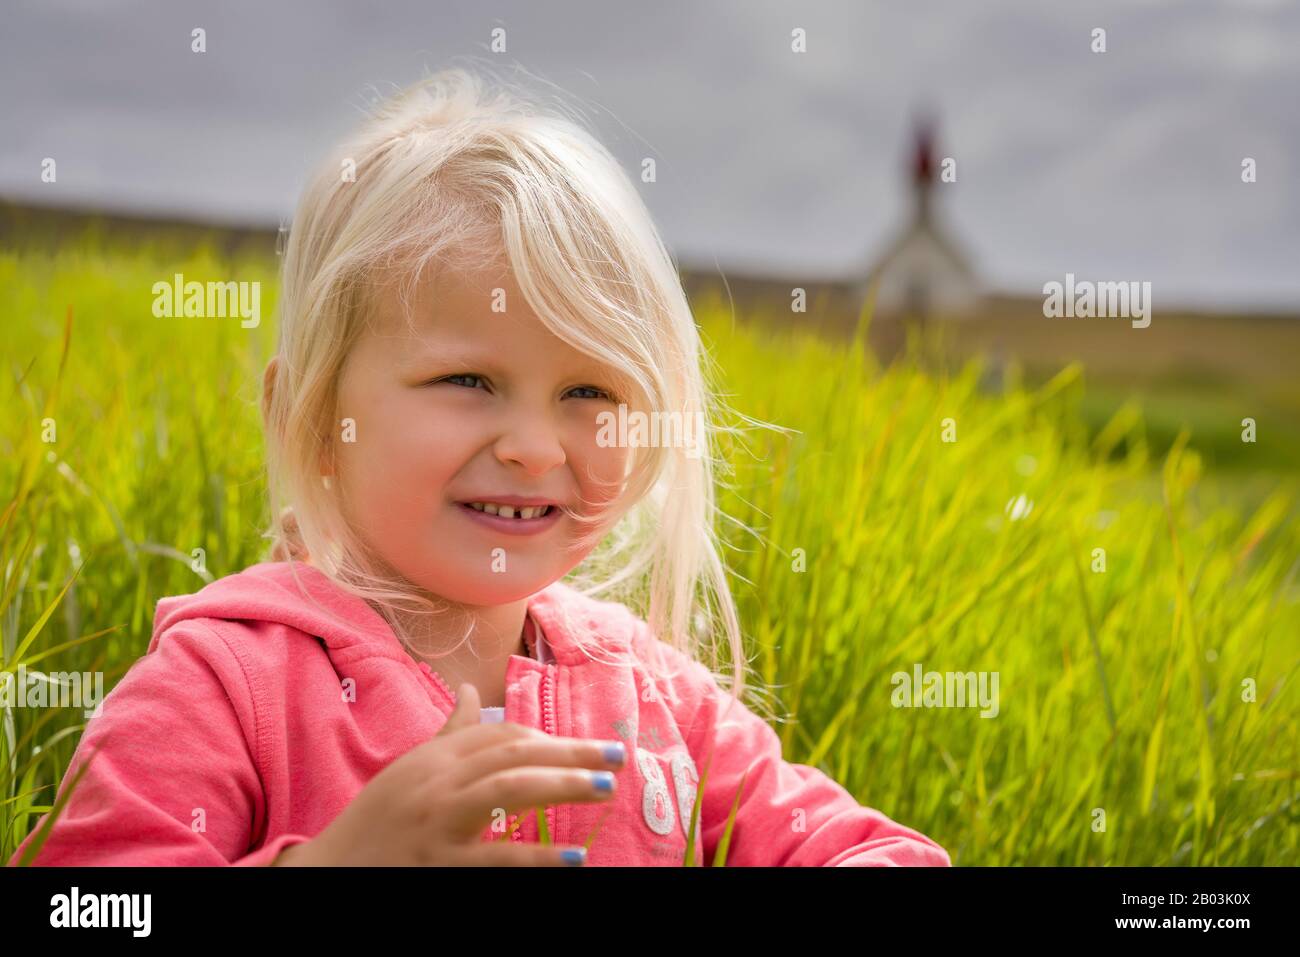 Jeune fille assise dans l'herbe, l'été, Islande Banque D'Images